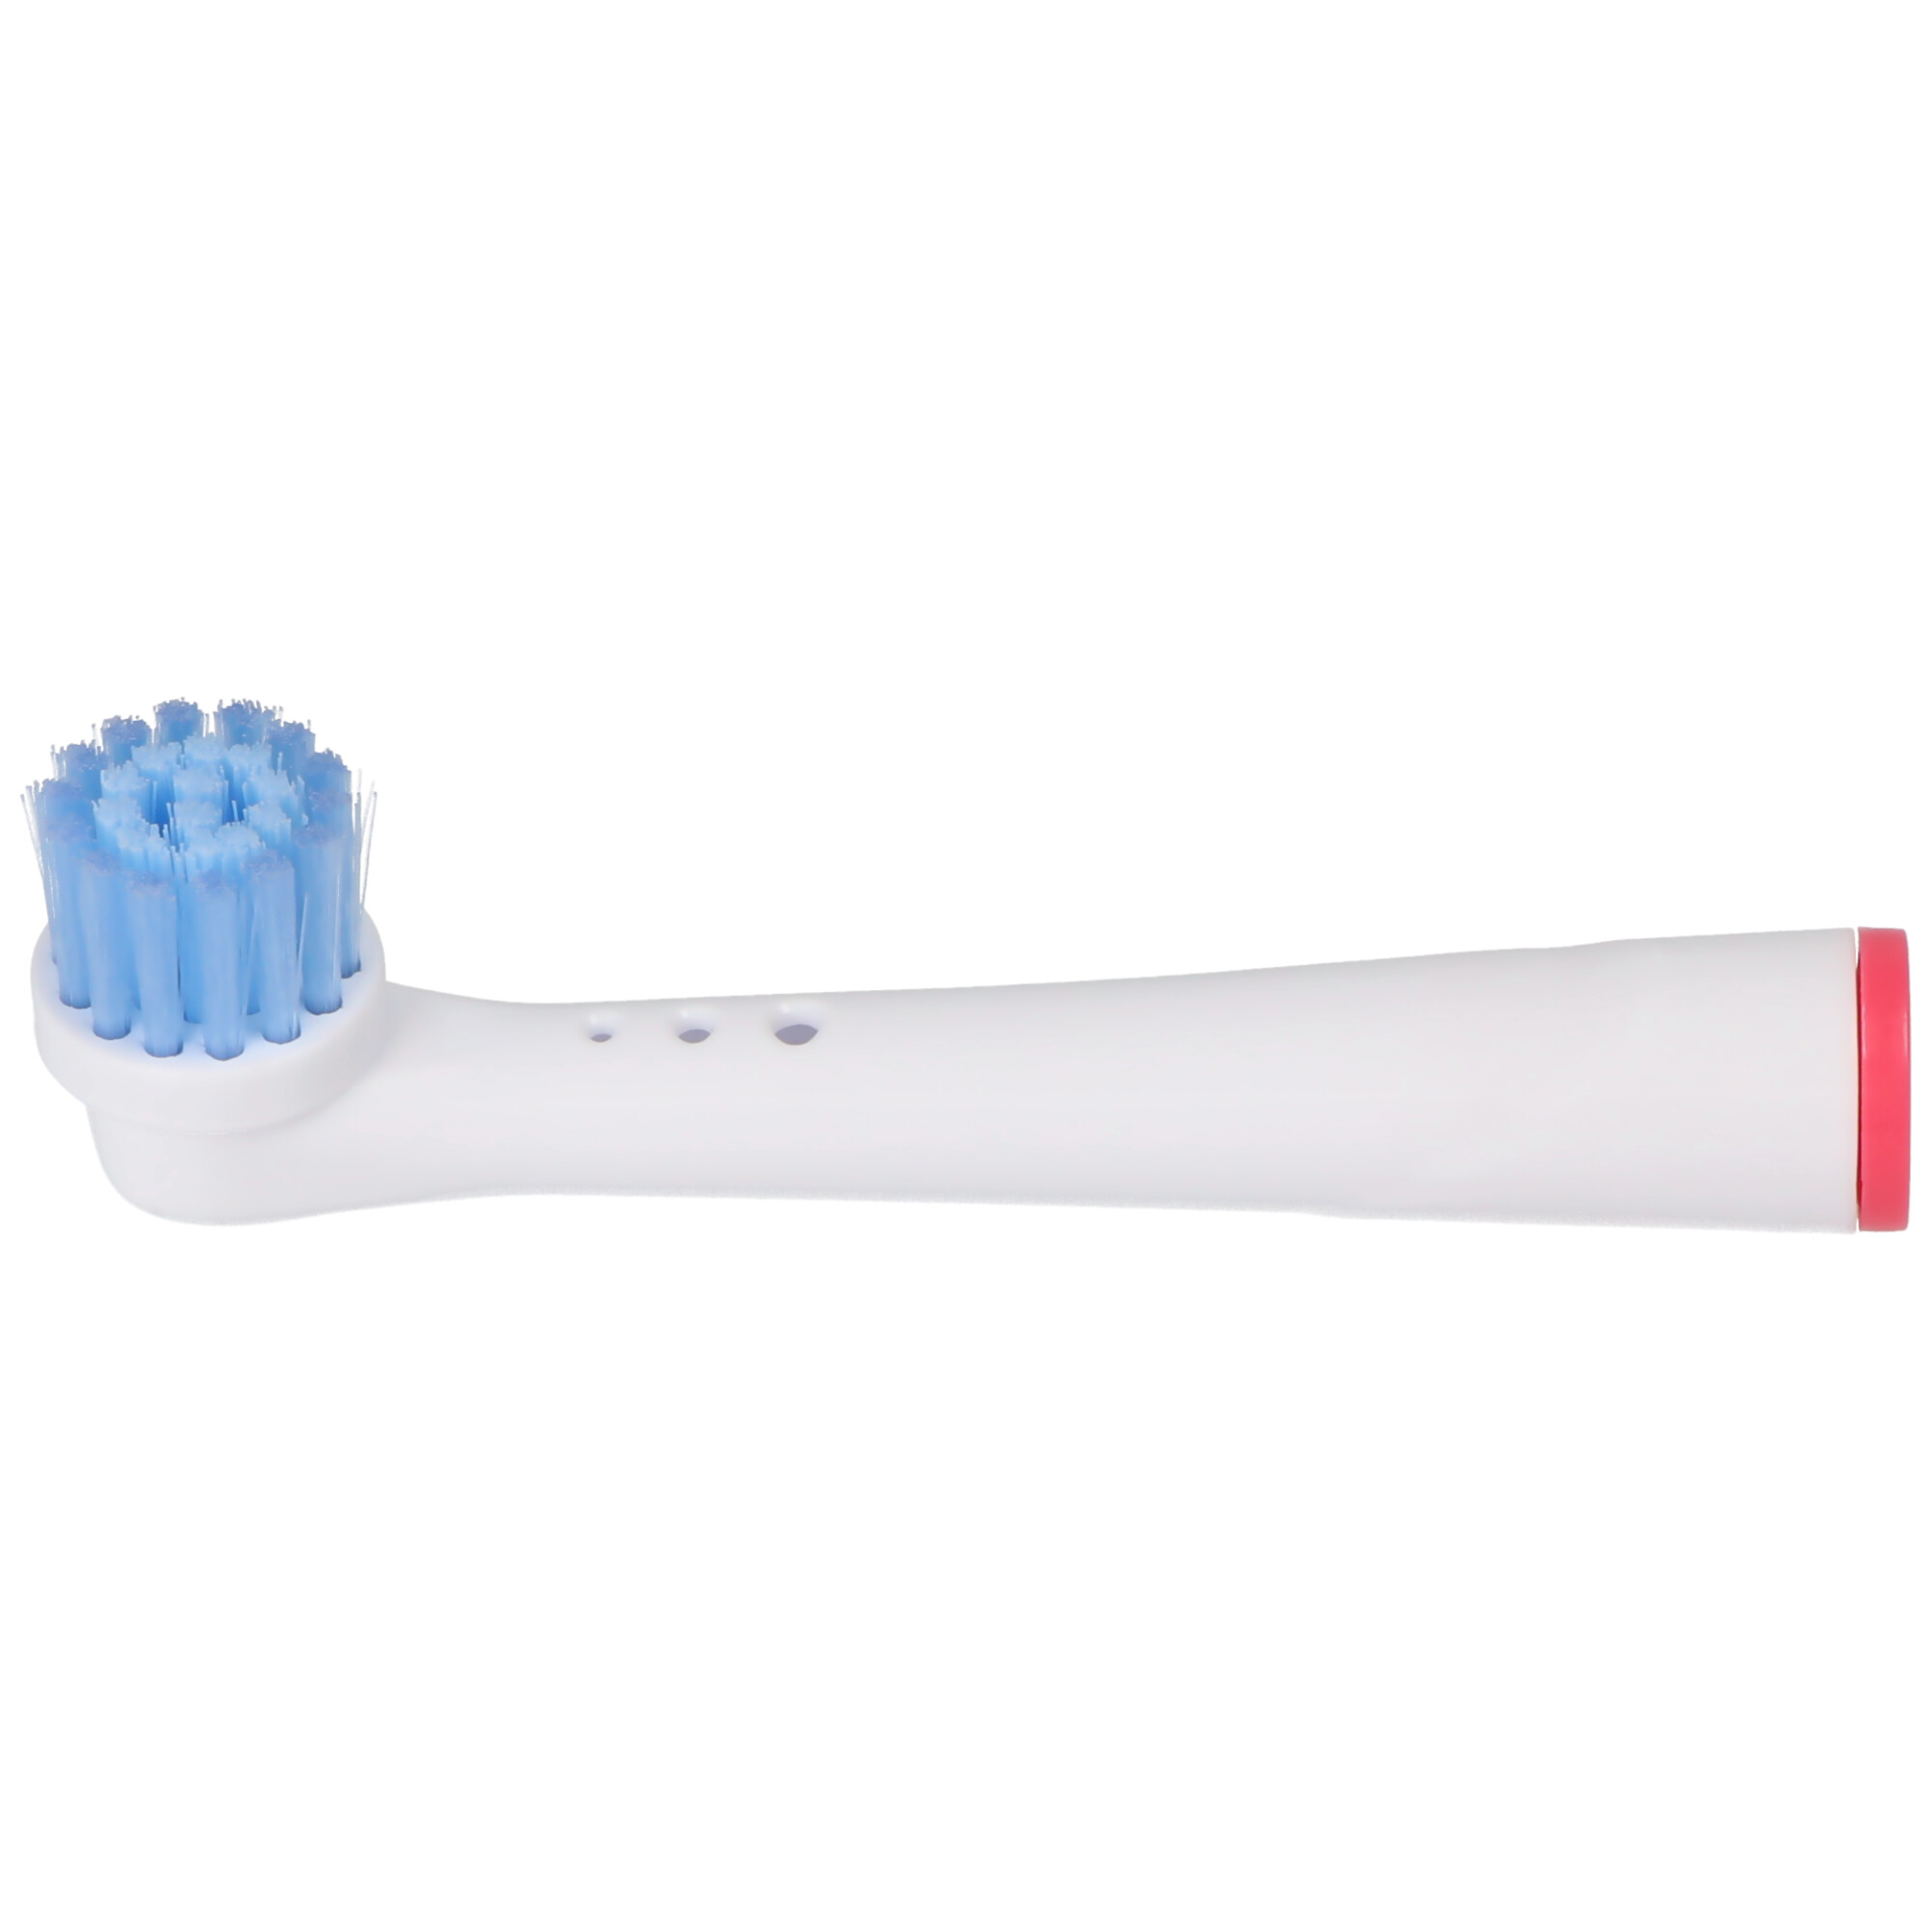 4 Stück Sensitive Clean Ersatz-Zahnbürstenkopf für elektrische Zahnbürsten von Oral-B, passend z.B. für Oral-B D10, D12, D16, D12 und viele andere Modelle von Oral-B